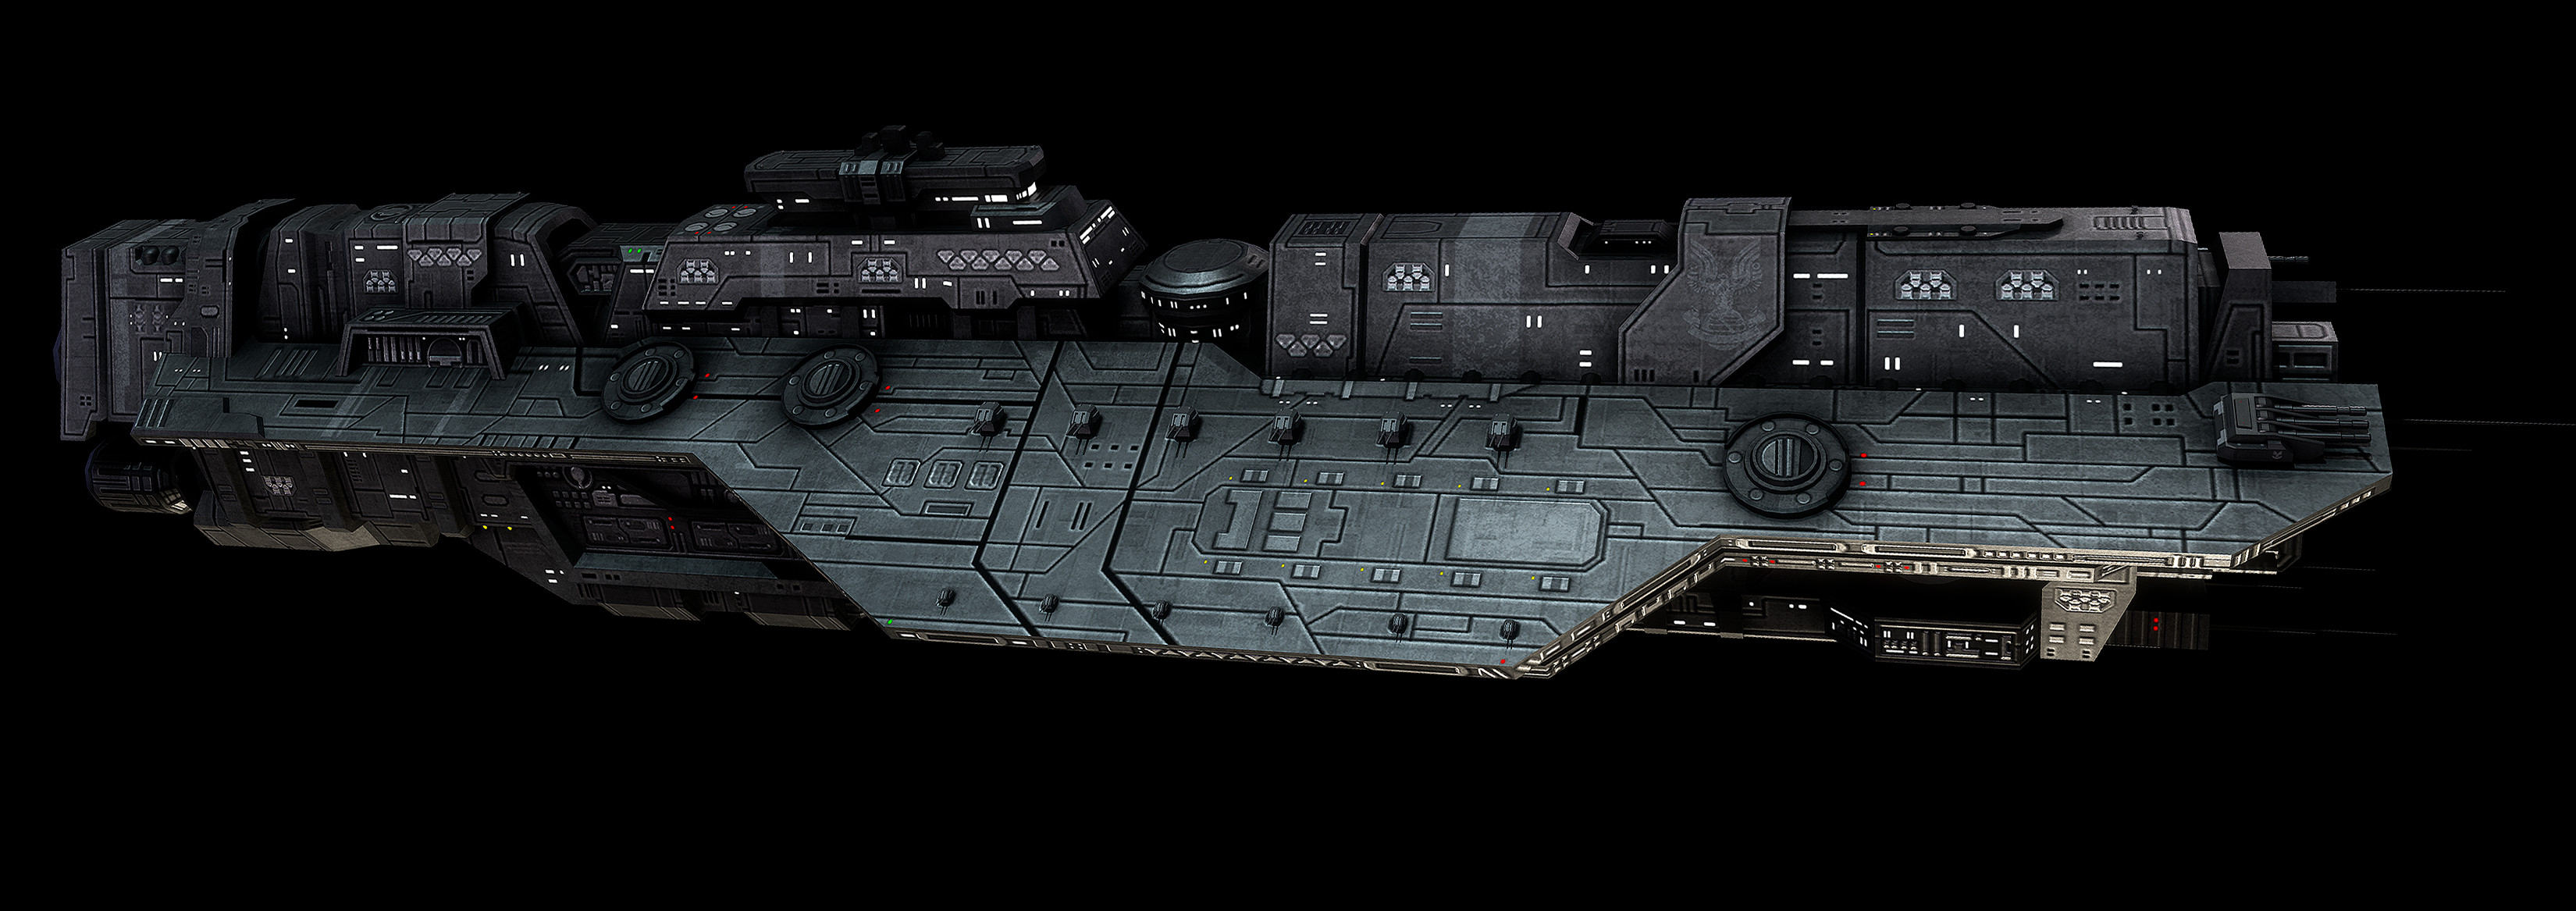 Ency2 Epoch-class Carrier (Jared Harris).jpg